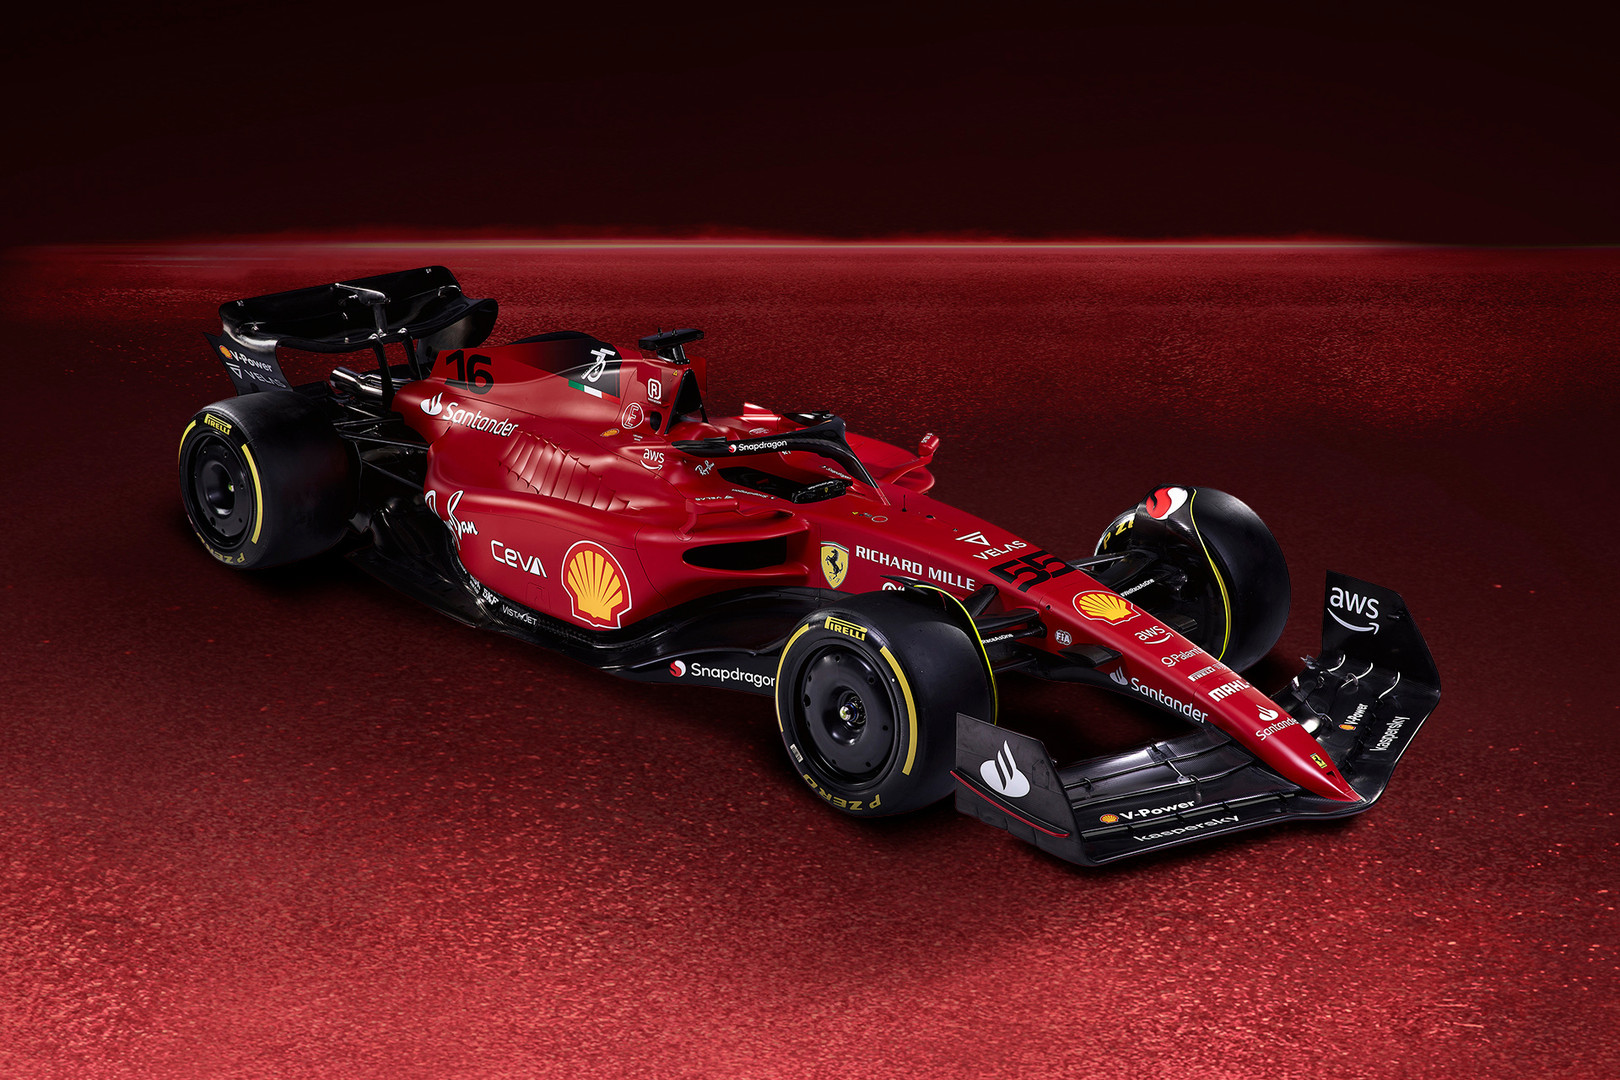 Credits: Ferrari.com